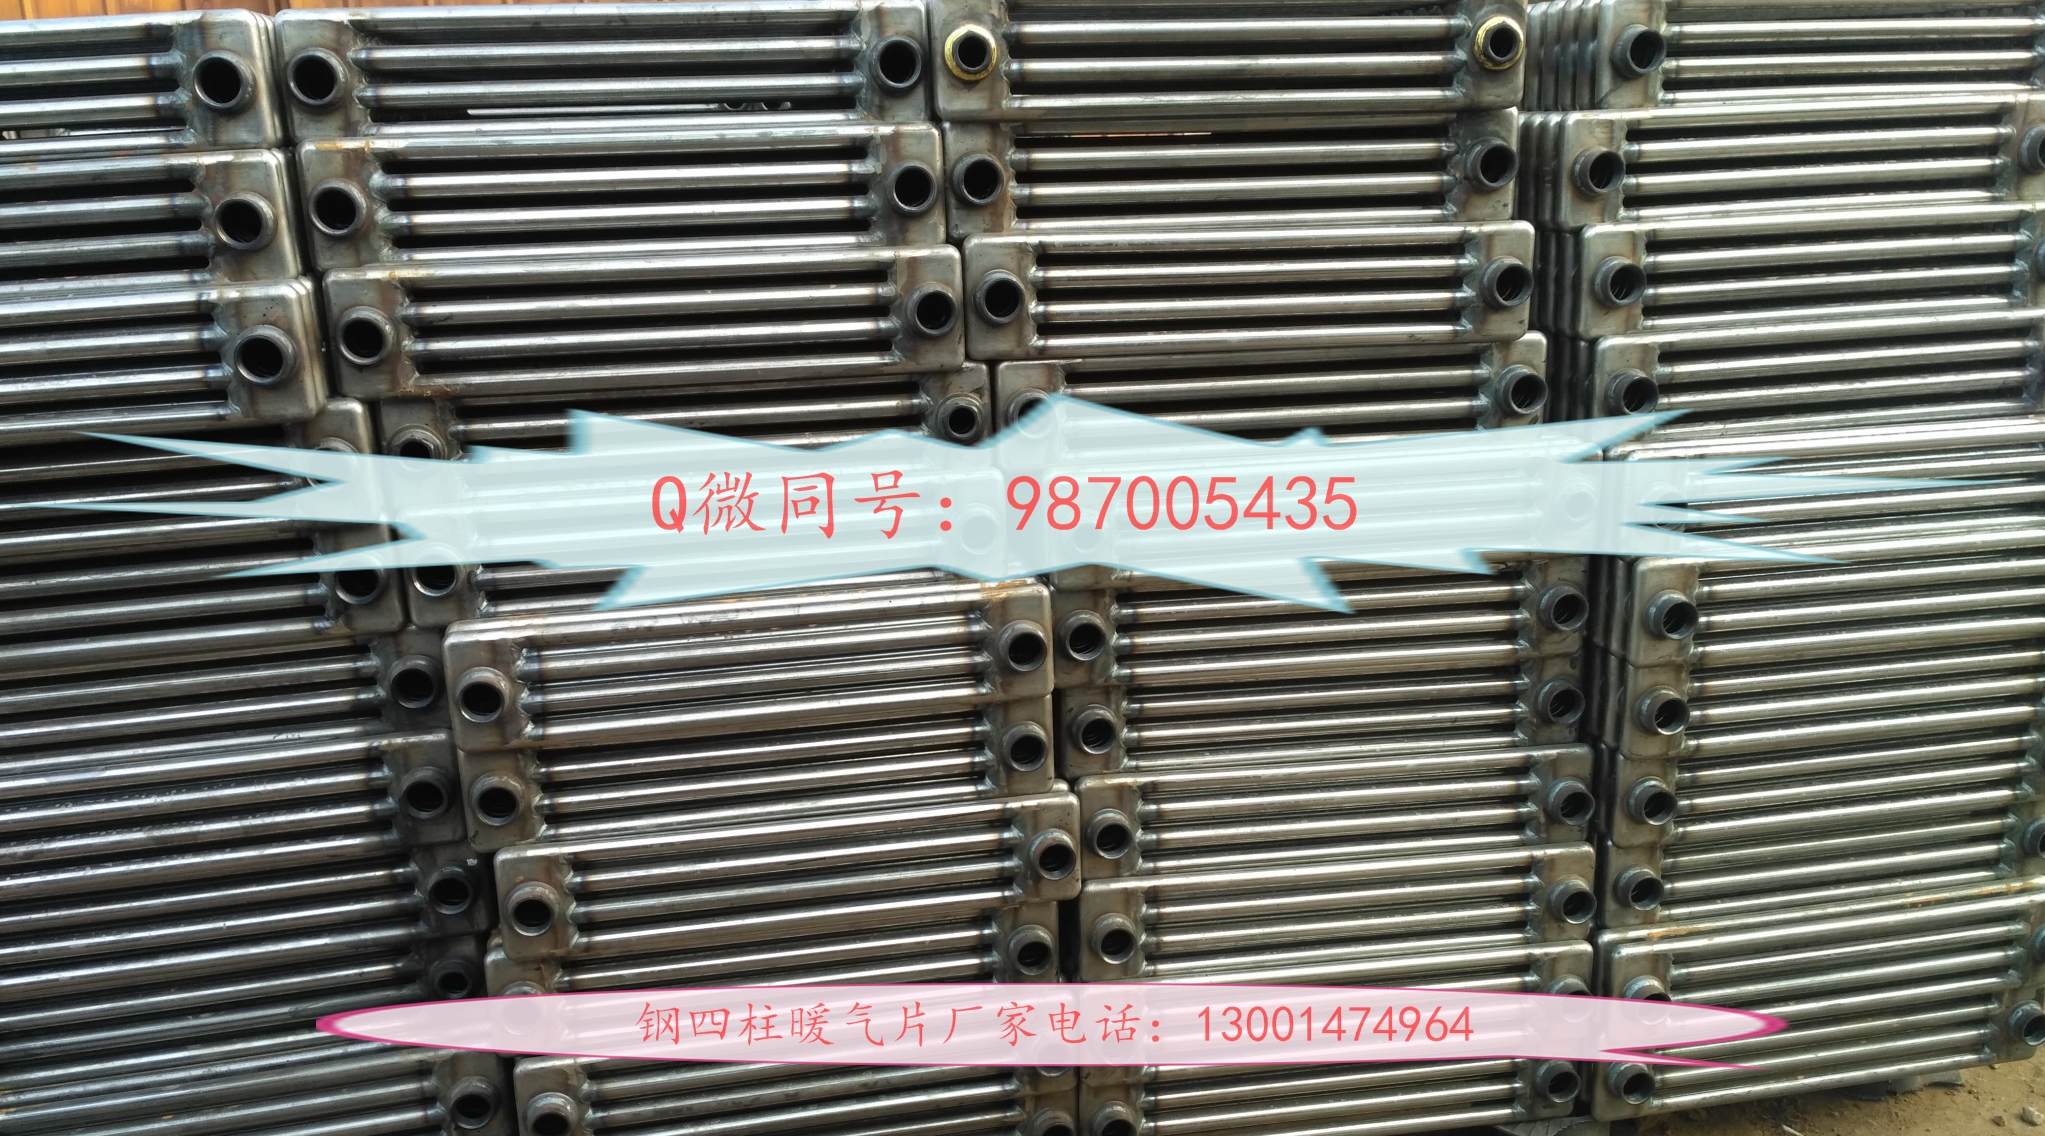 厂家直销钢四柱暖气片散热器 蒸汽供暖散热器 GZT4-0.6/X-1.1钢制散热器图片